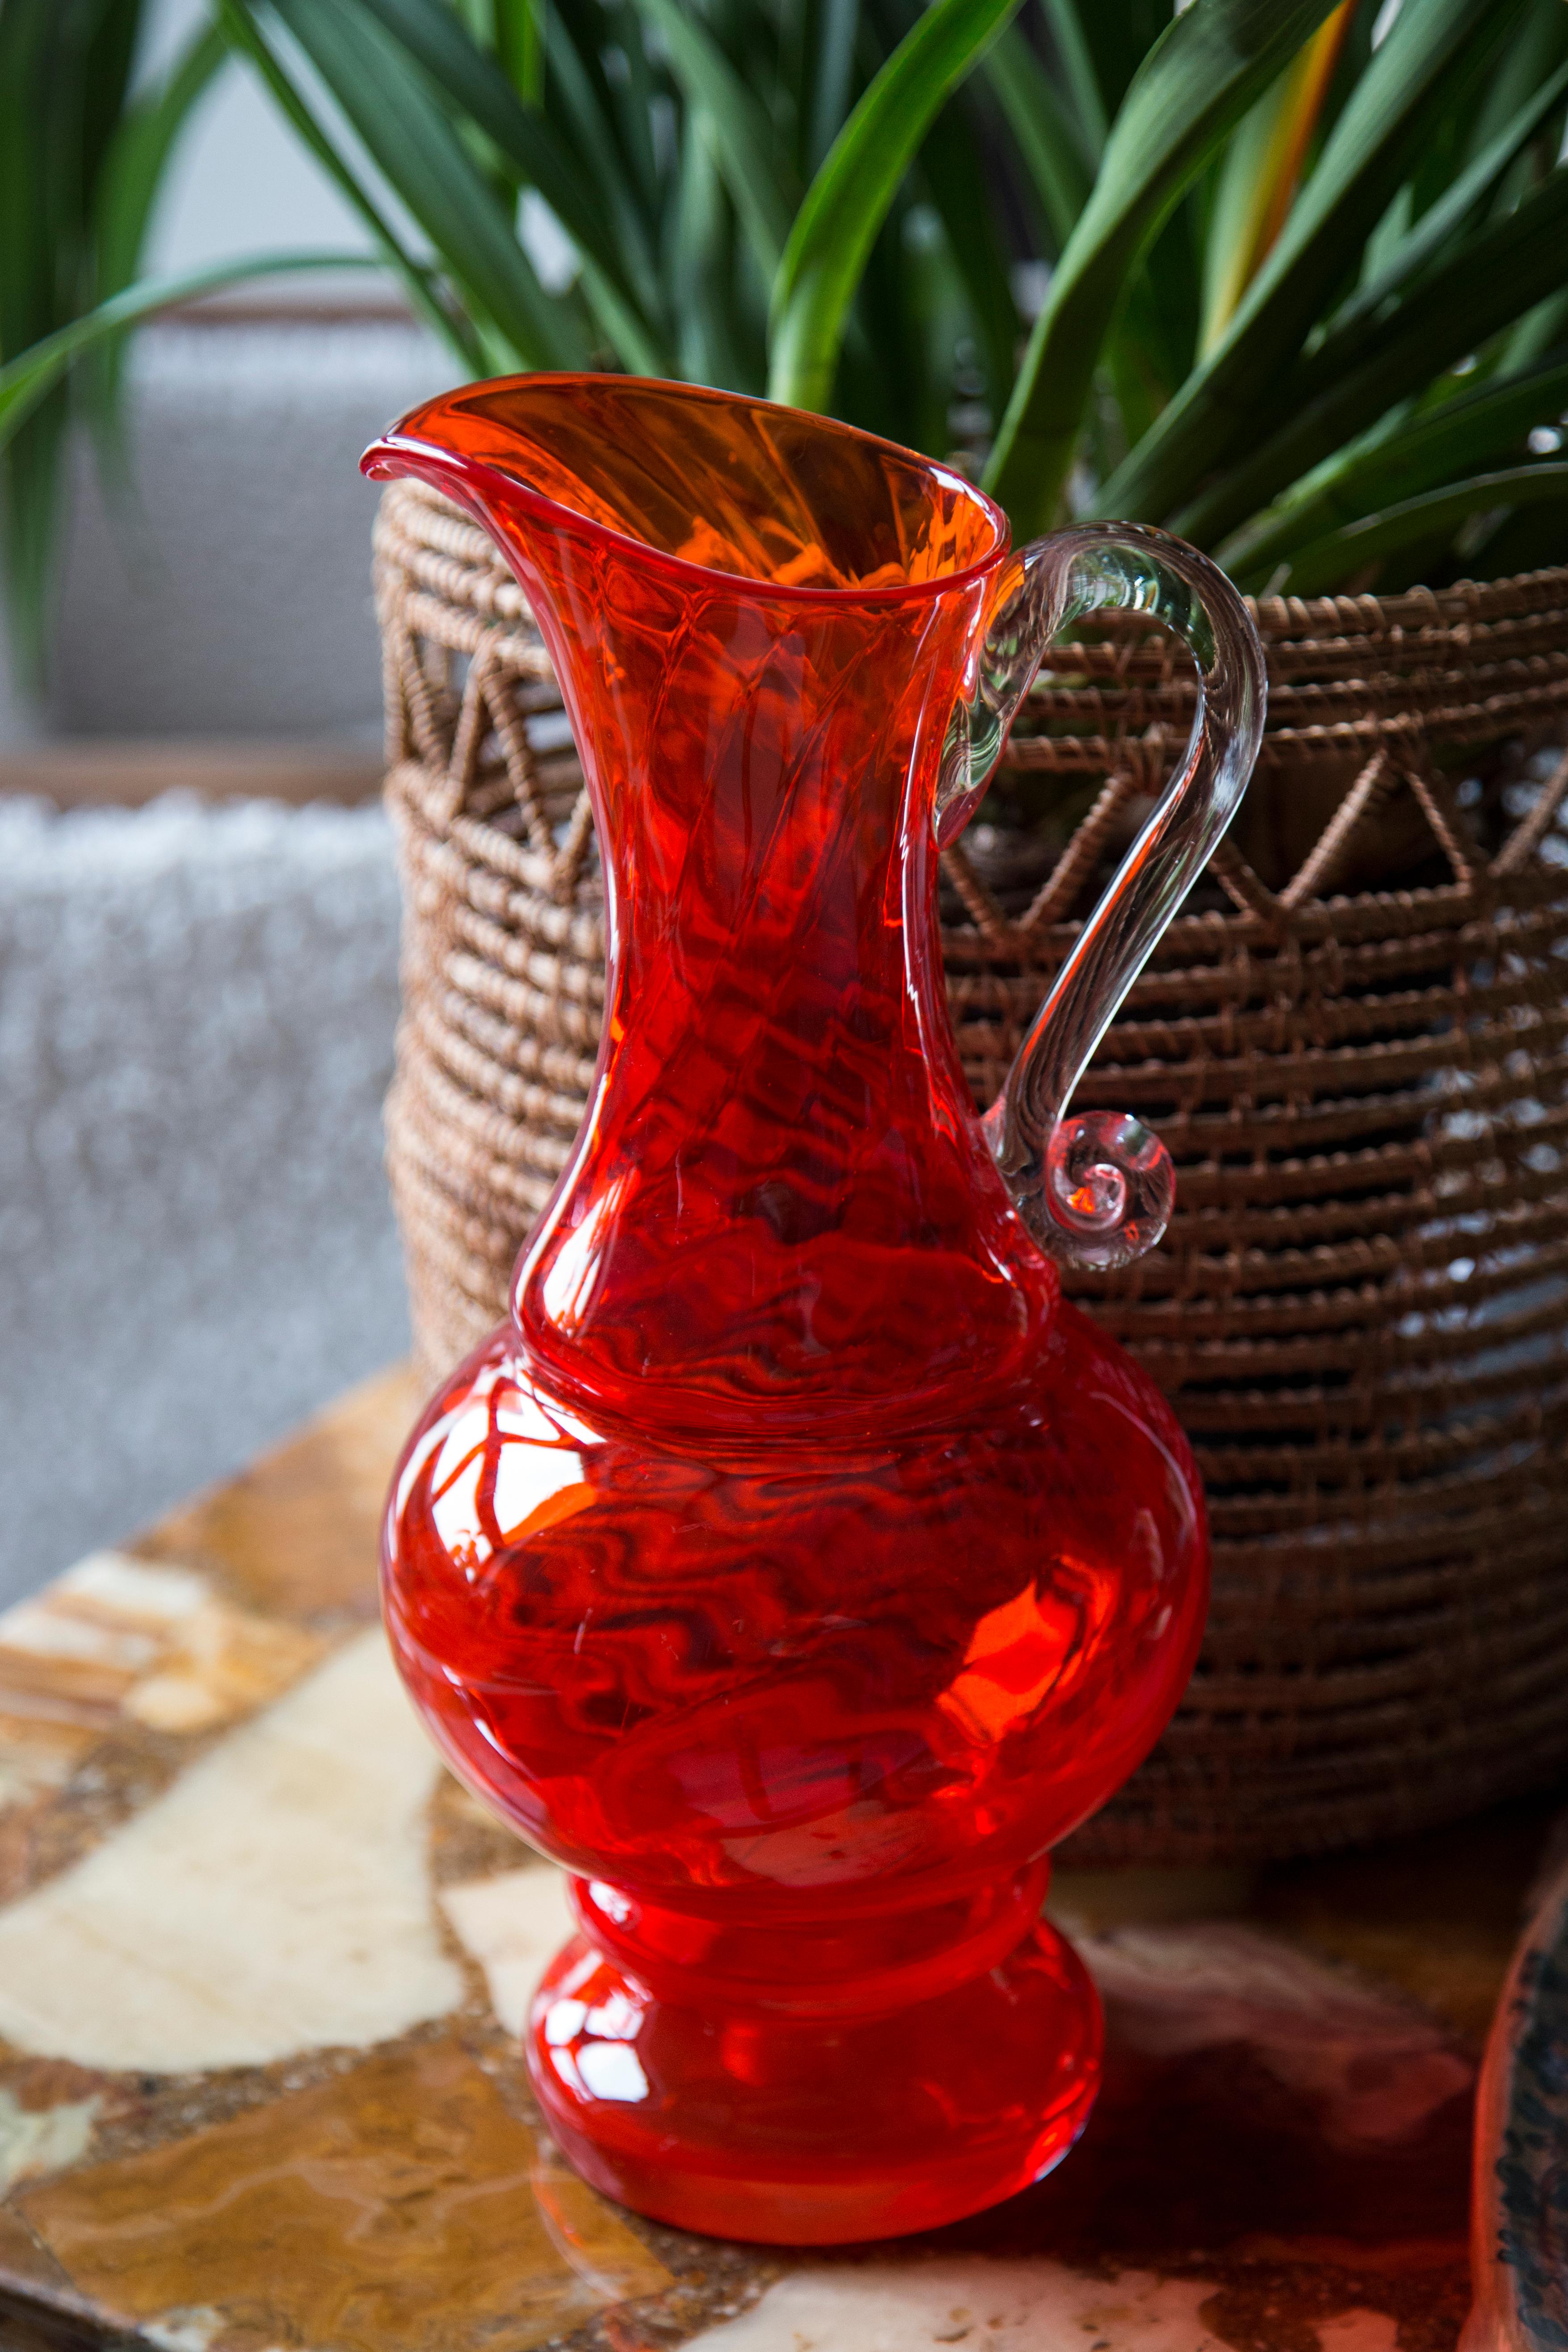 Glass Pot “SCARF”
Author: Decorative Glassworks 